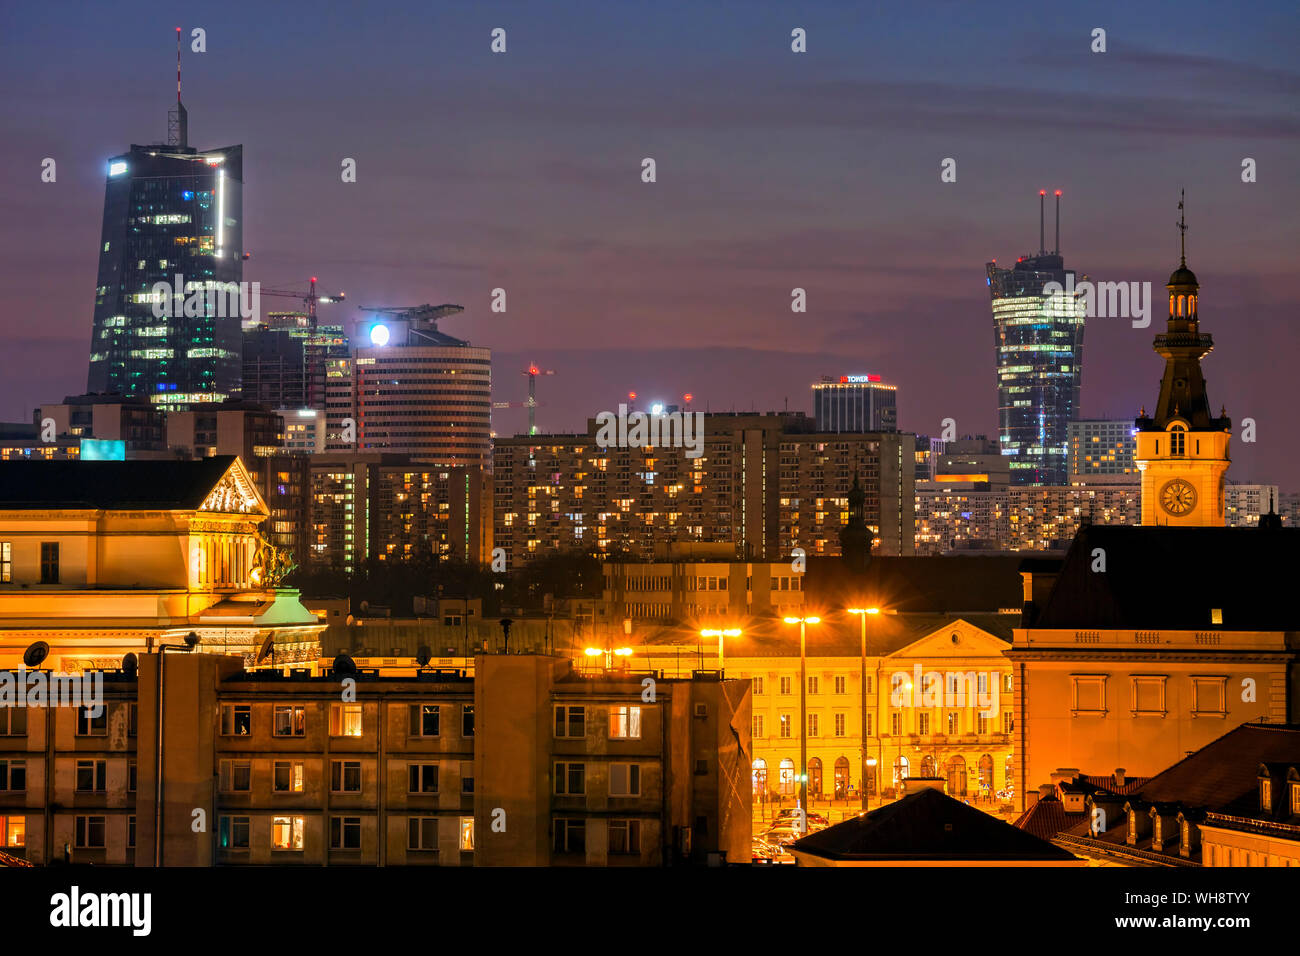 Paysage urbain en soirée, quartier du centre-ville, Varsovie, Pologne Banque D'Images